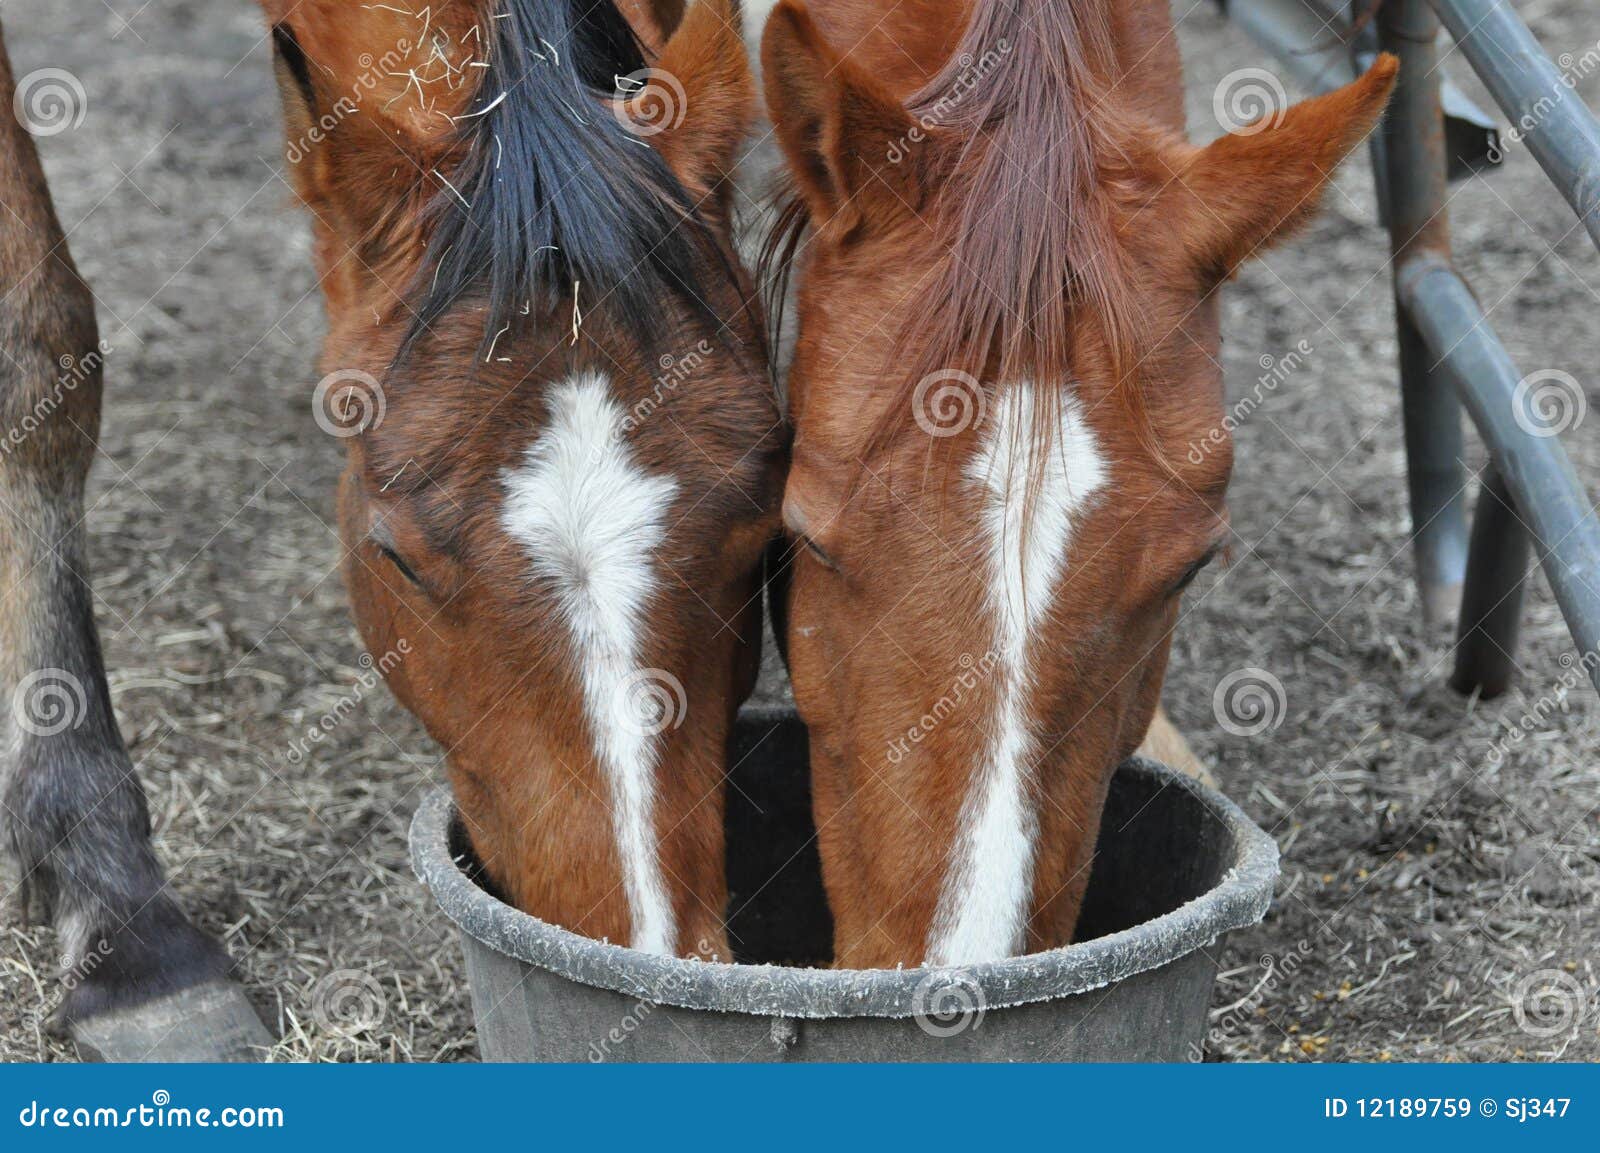 feeding horses